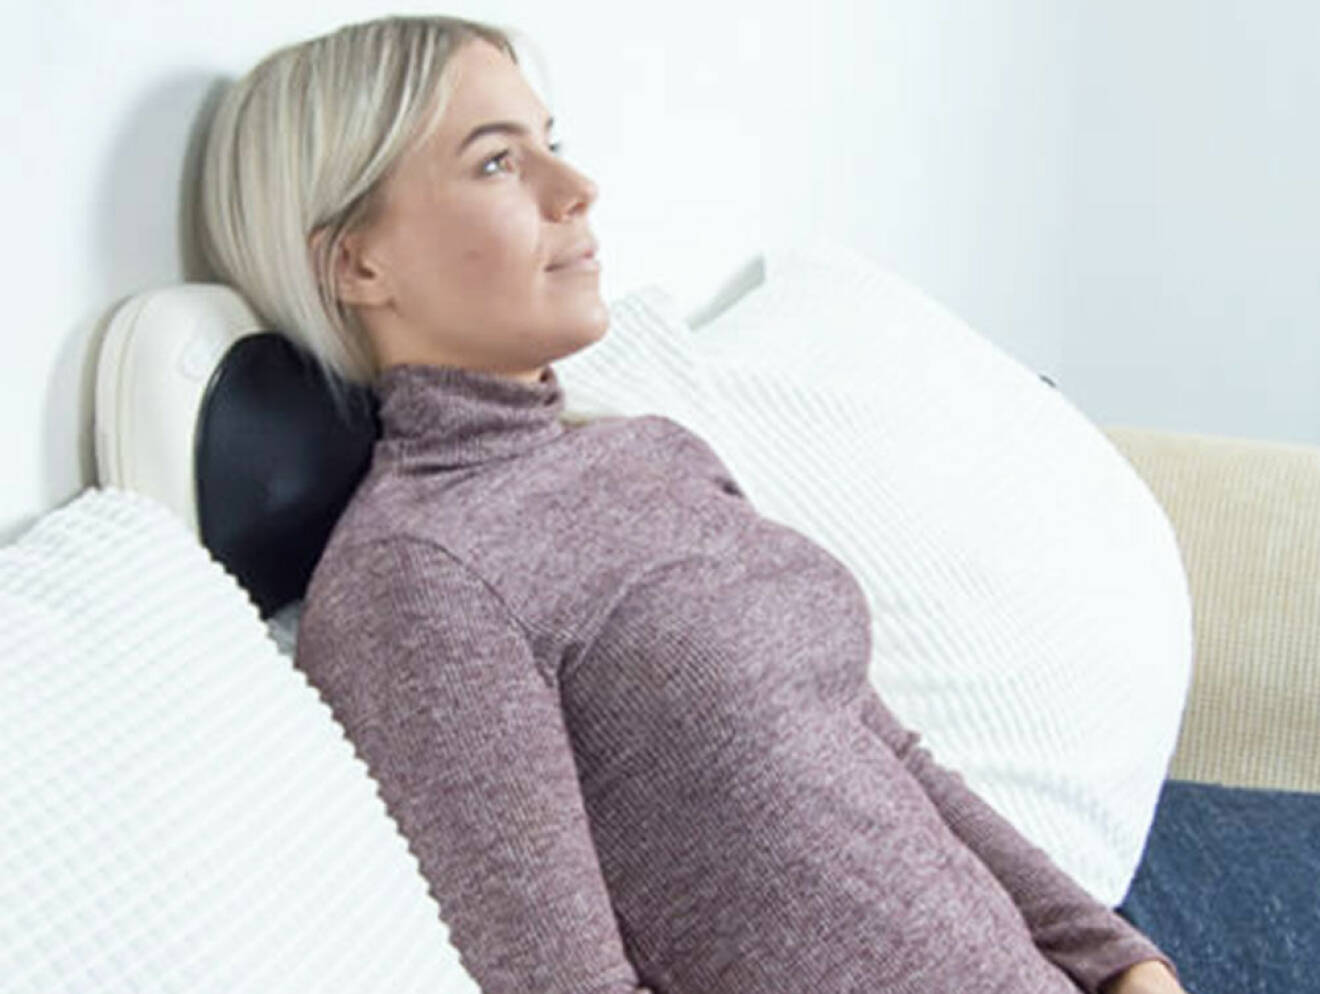 Kvinna får massage av massagekudde i soffan.